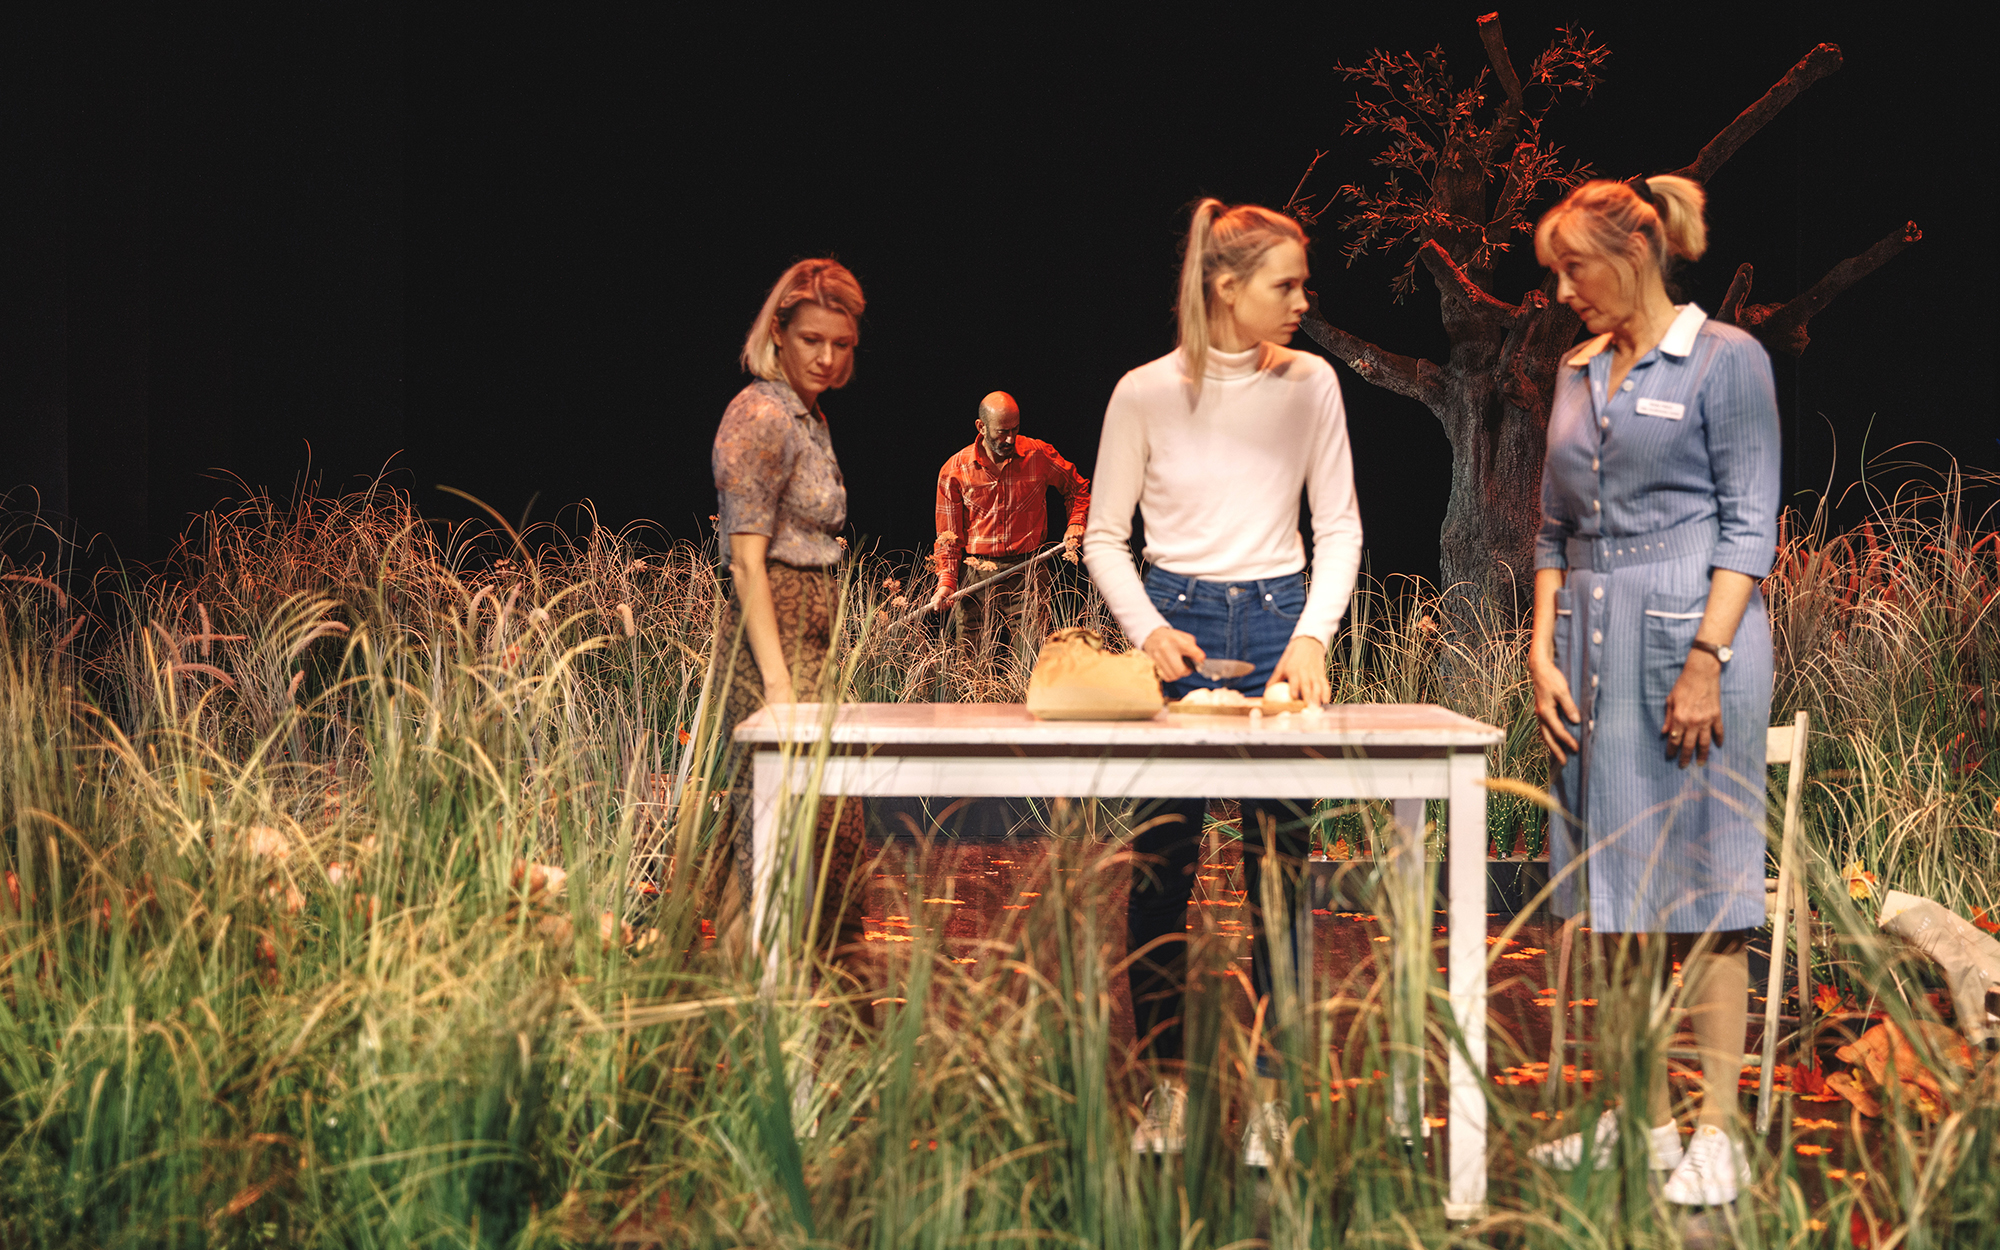 Pip (Tjaša Železnik), Rosie (Klara Kuk) in Fran (Judita Zidar) stojijo za mizo na vrtu, Rosie drži v rokah nož, videti je, kot da pripravlja hrano. Obdaja jih visoka trava. V ozadju Bob (Boris Ostan) s kosilnico hodi po vrtu. Avtor fotografije: Peter Giod